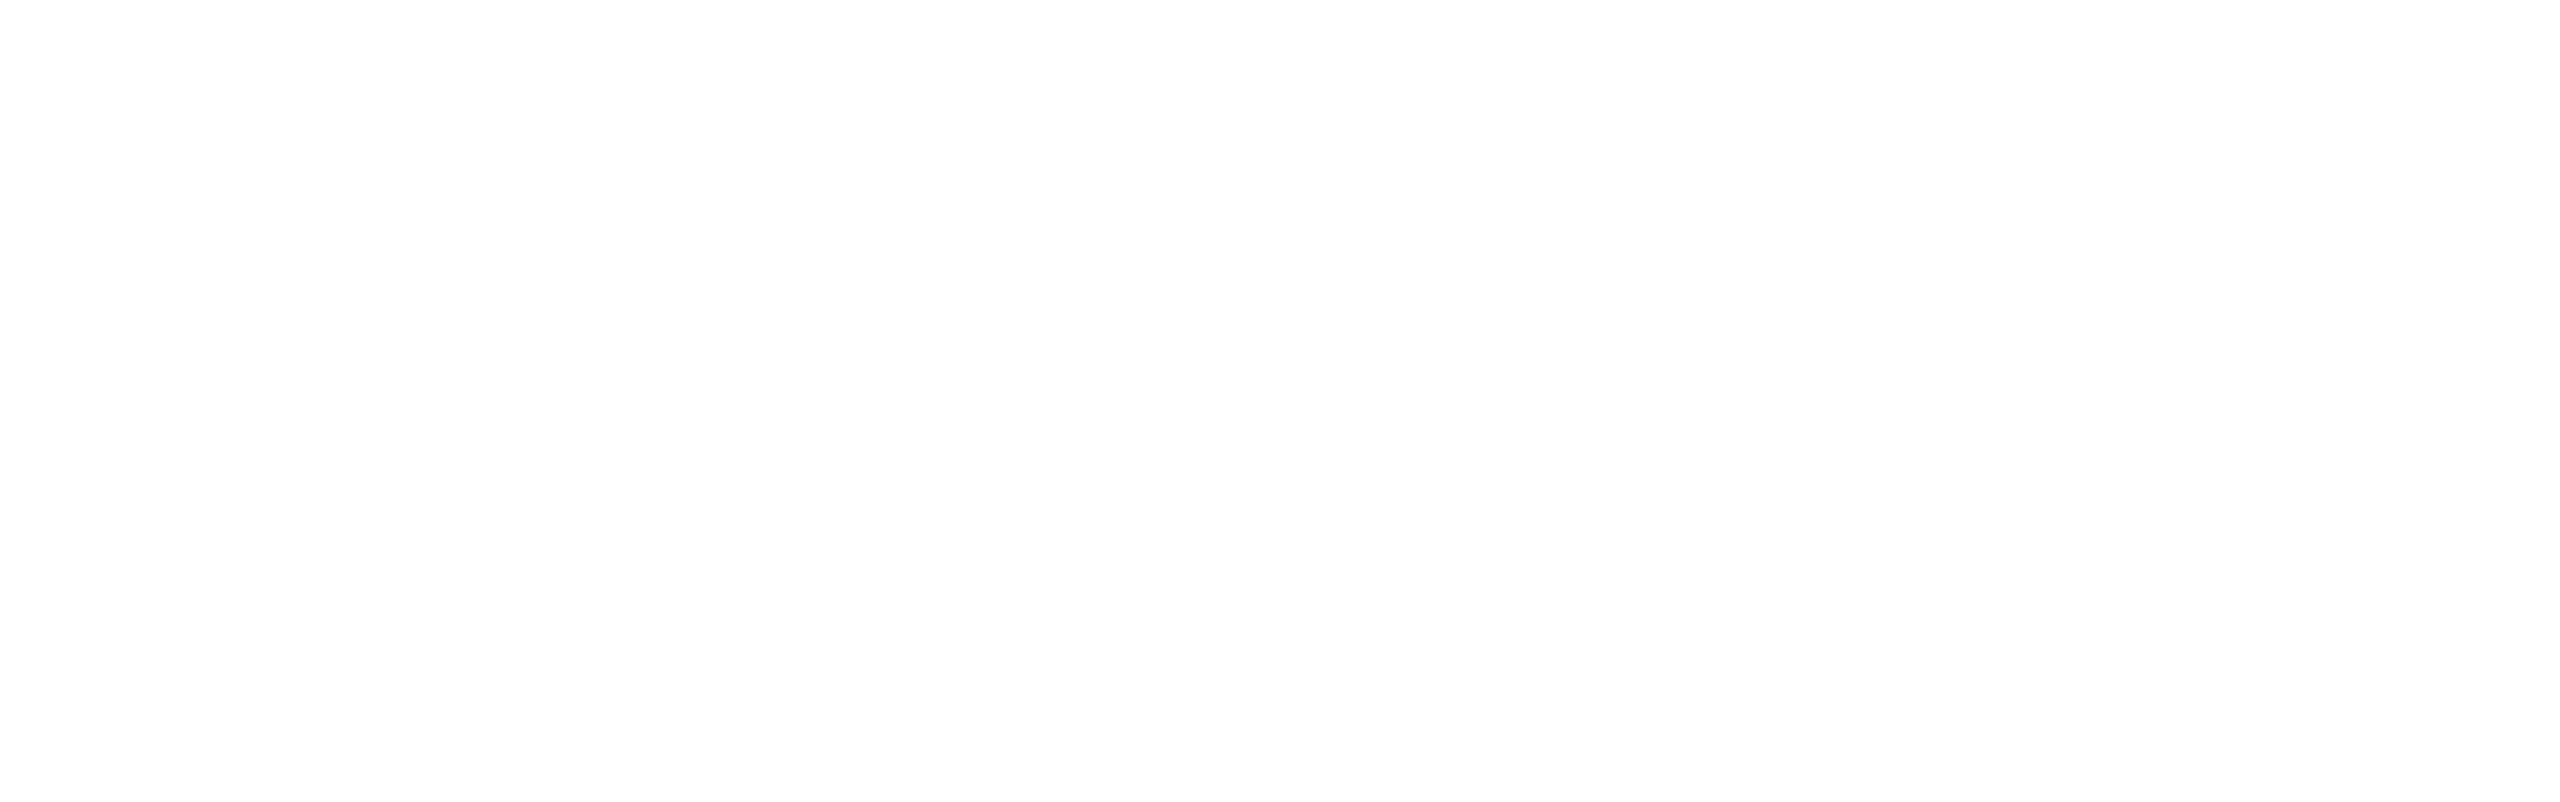 Joudina logo